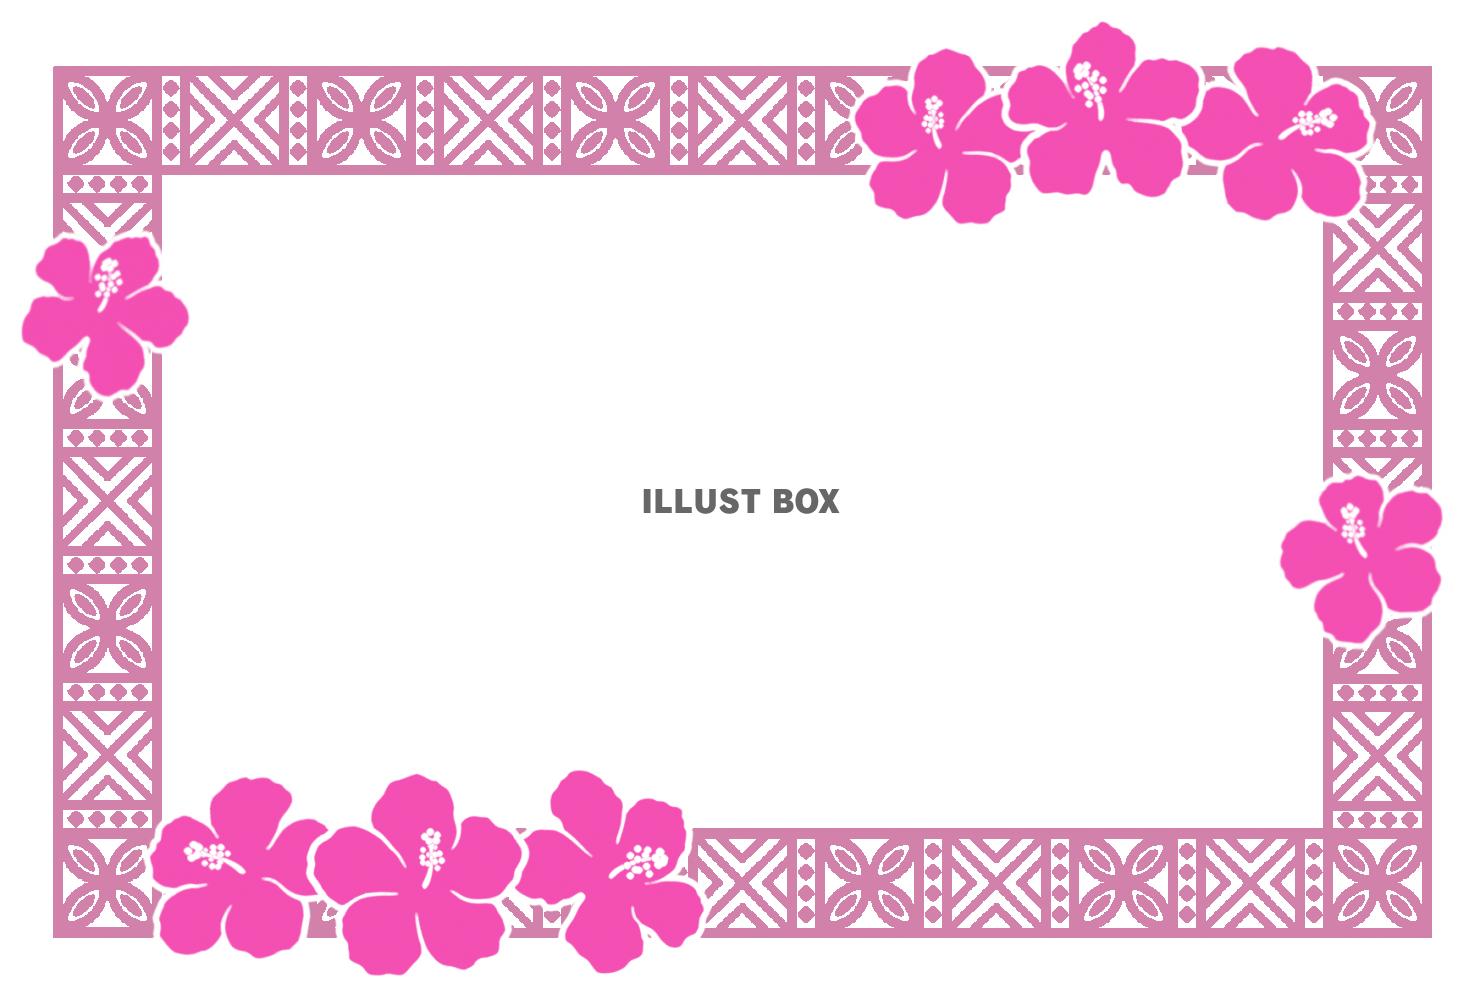 ピンク色のハイビスカスとハワイ伝統模様風のフレーム